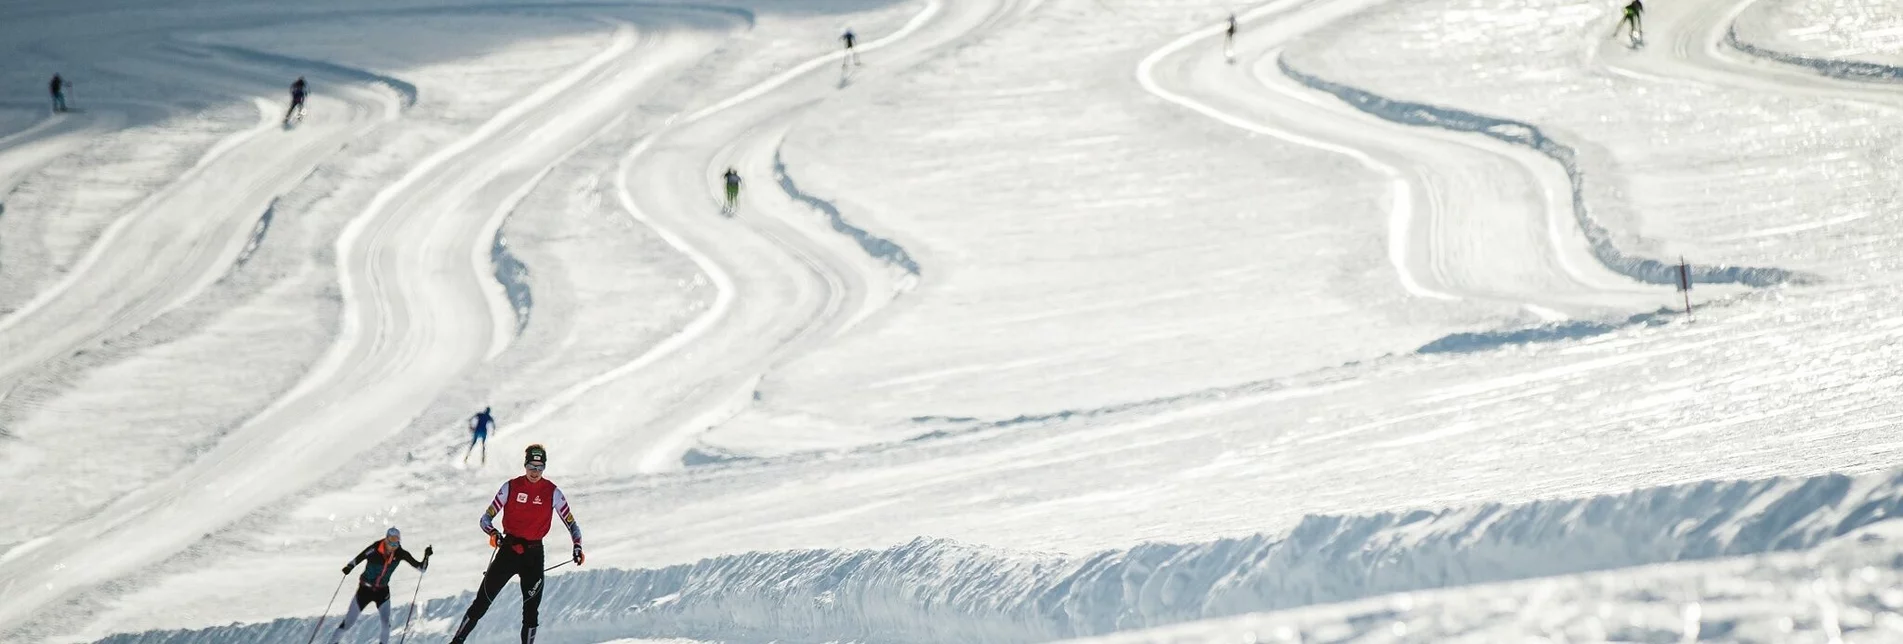 Ski nordic skating Dachstein Glacier - Hallstatt XC Trail - Touren-Impression #1 | © Erlebnisregion Schladming-Dachstein